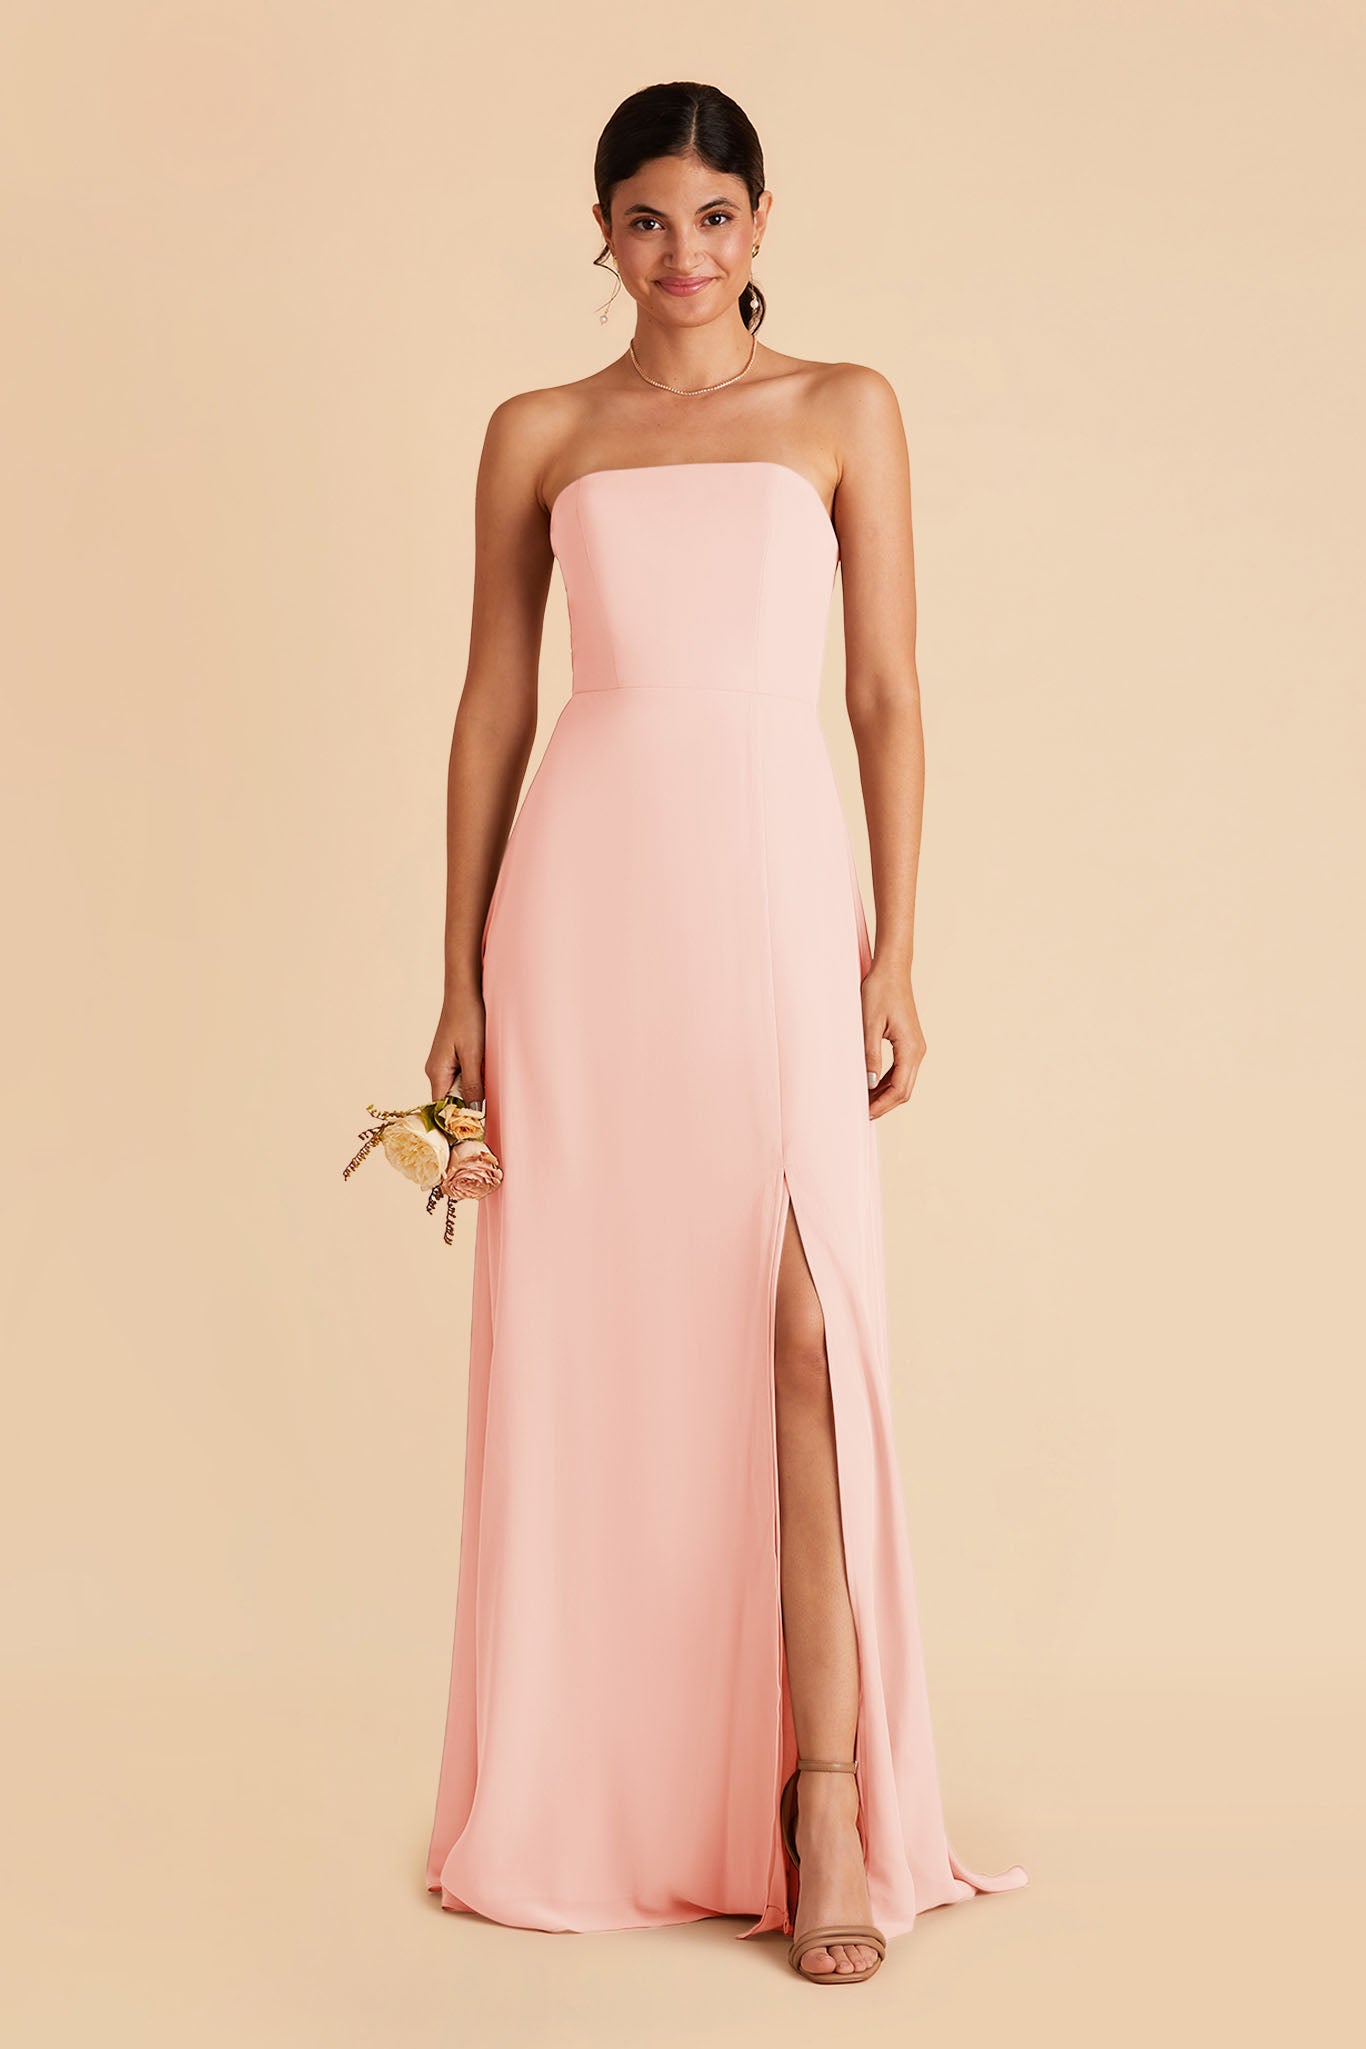 Blush Pink Chris Convertible Chiffon Dress by Birdy Grey